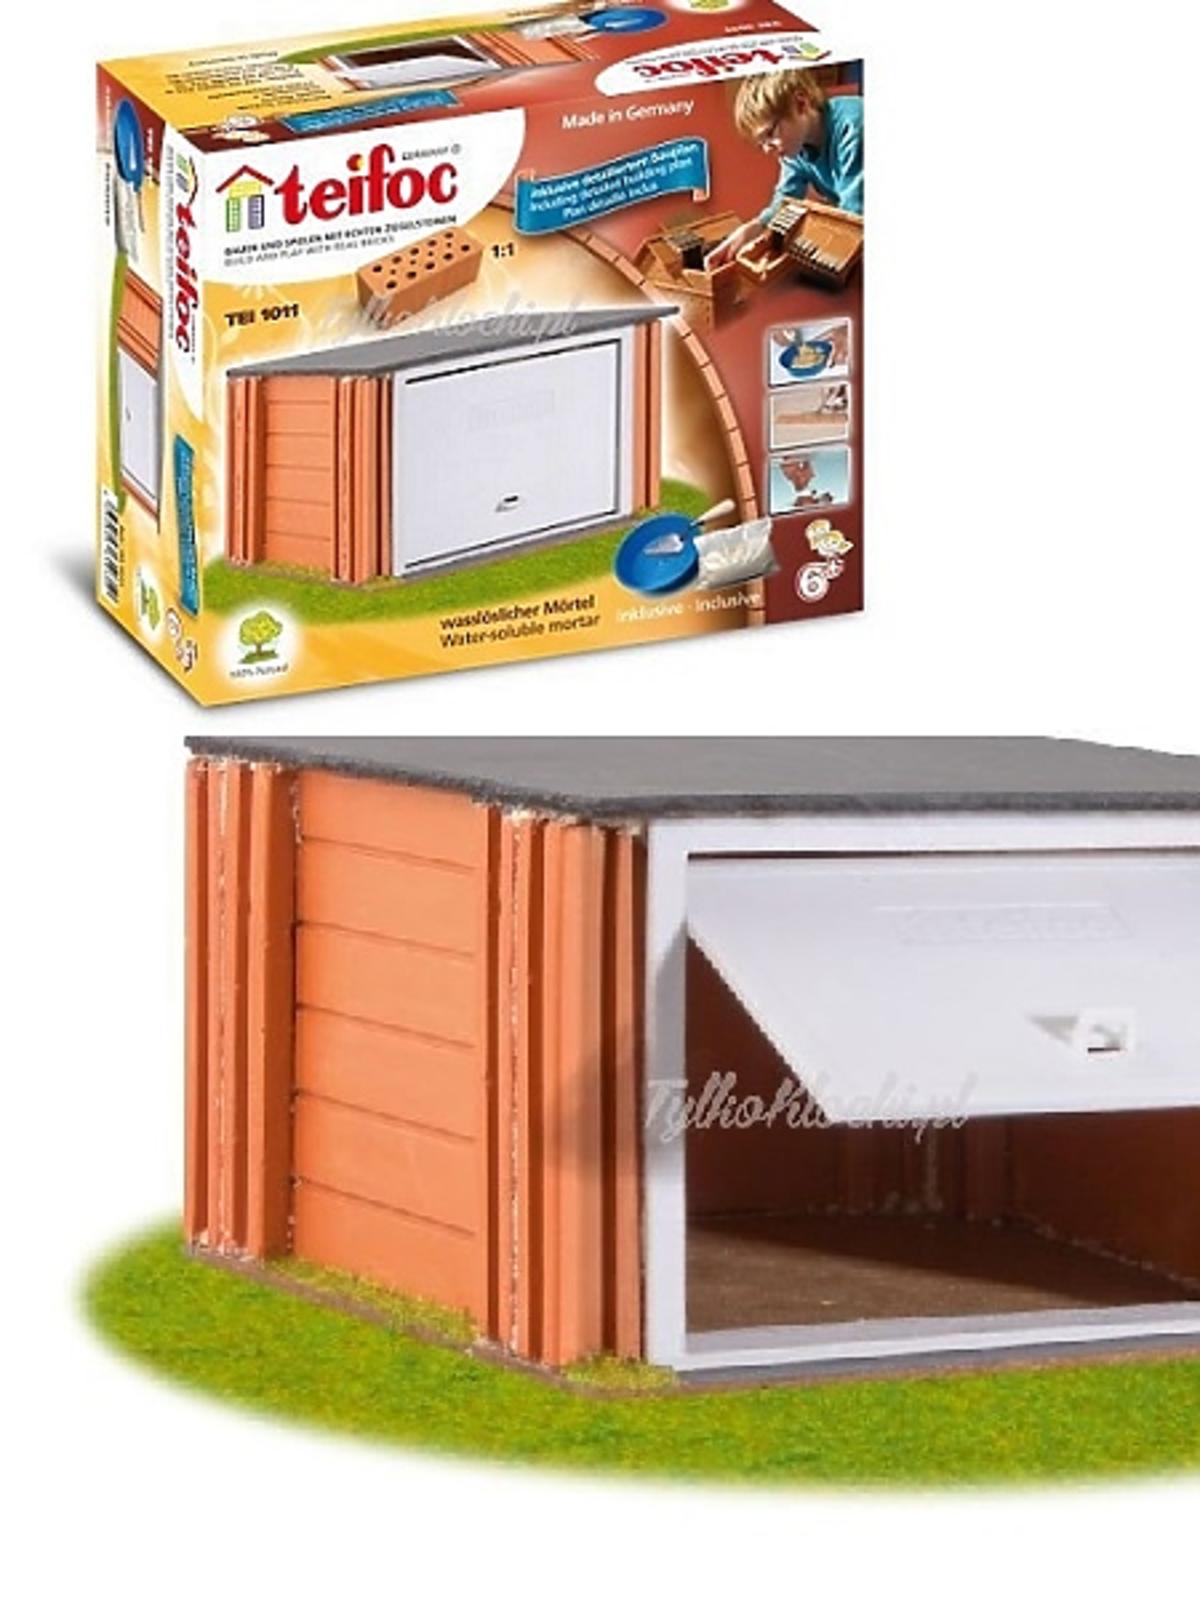 Teifoc Klocki ceramiczne garaż - katalog produktów dla dzieci na Babyonlinepl.jpg